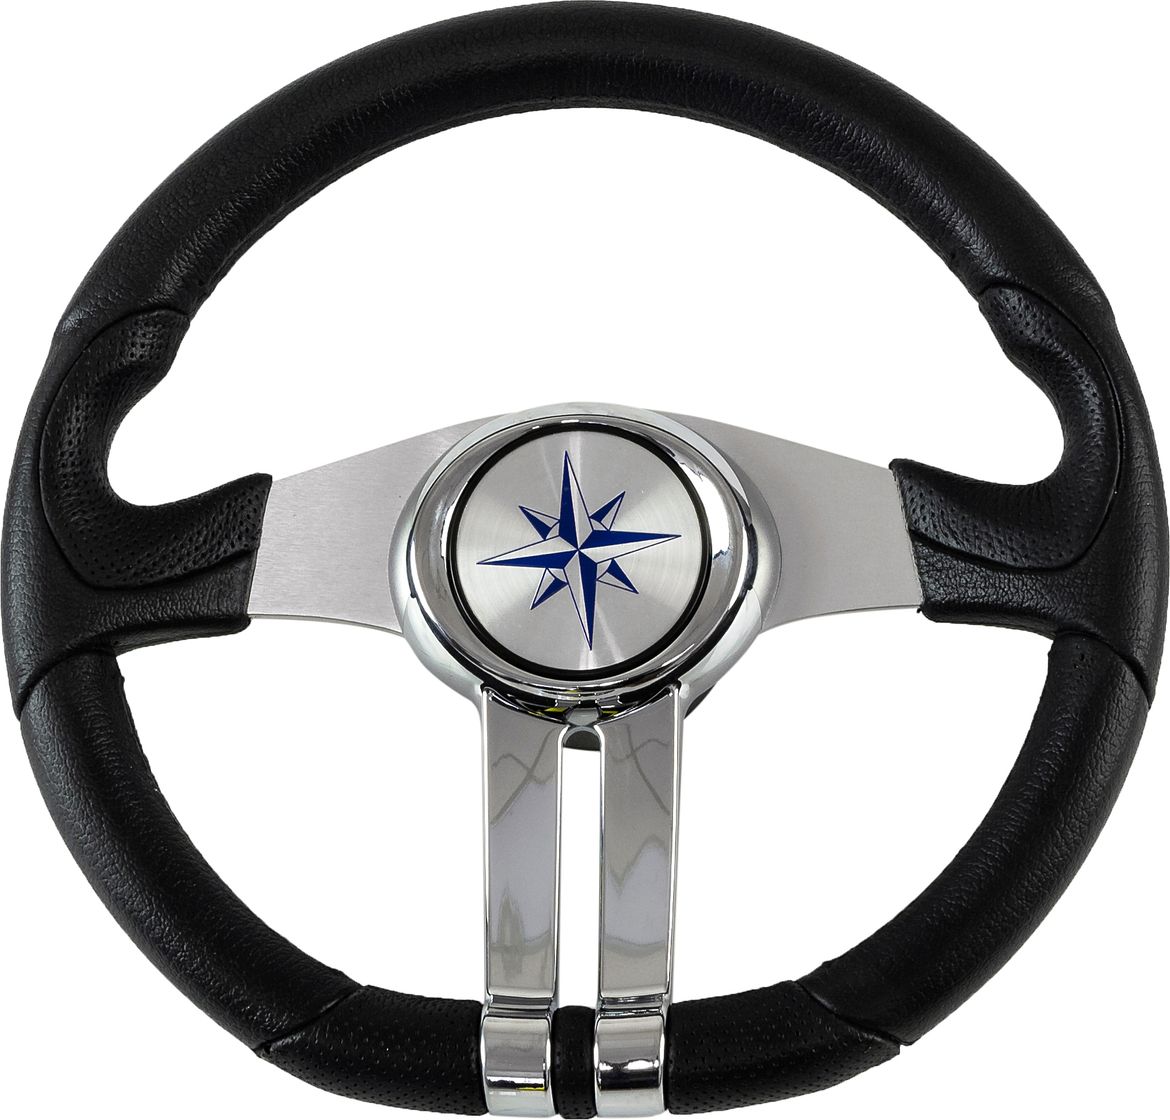 Рулевое колесо BALTIC обод черный, спицы серебряные д. 320 мм VN133203-01 рулевое колесо barracuda обод спицы серебряные д 350 мм vn135002 01